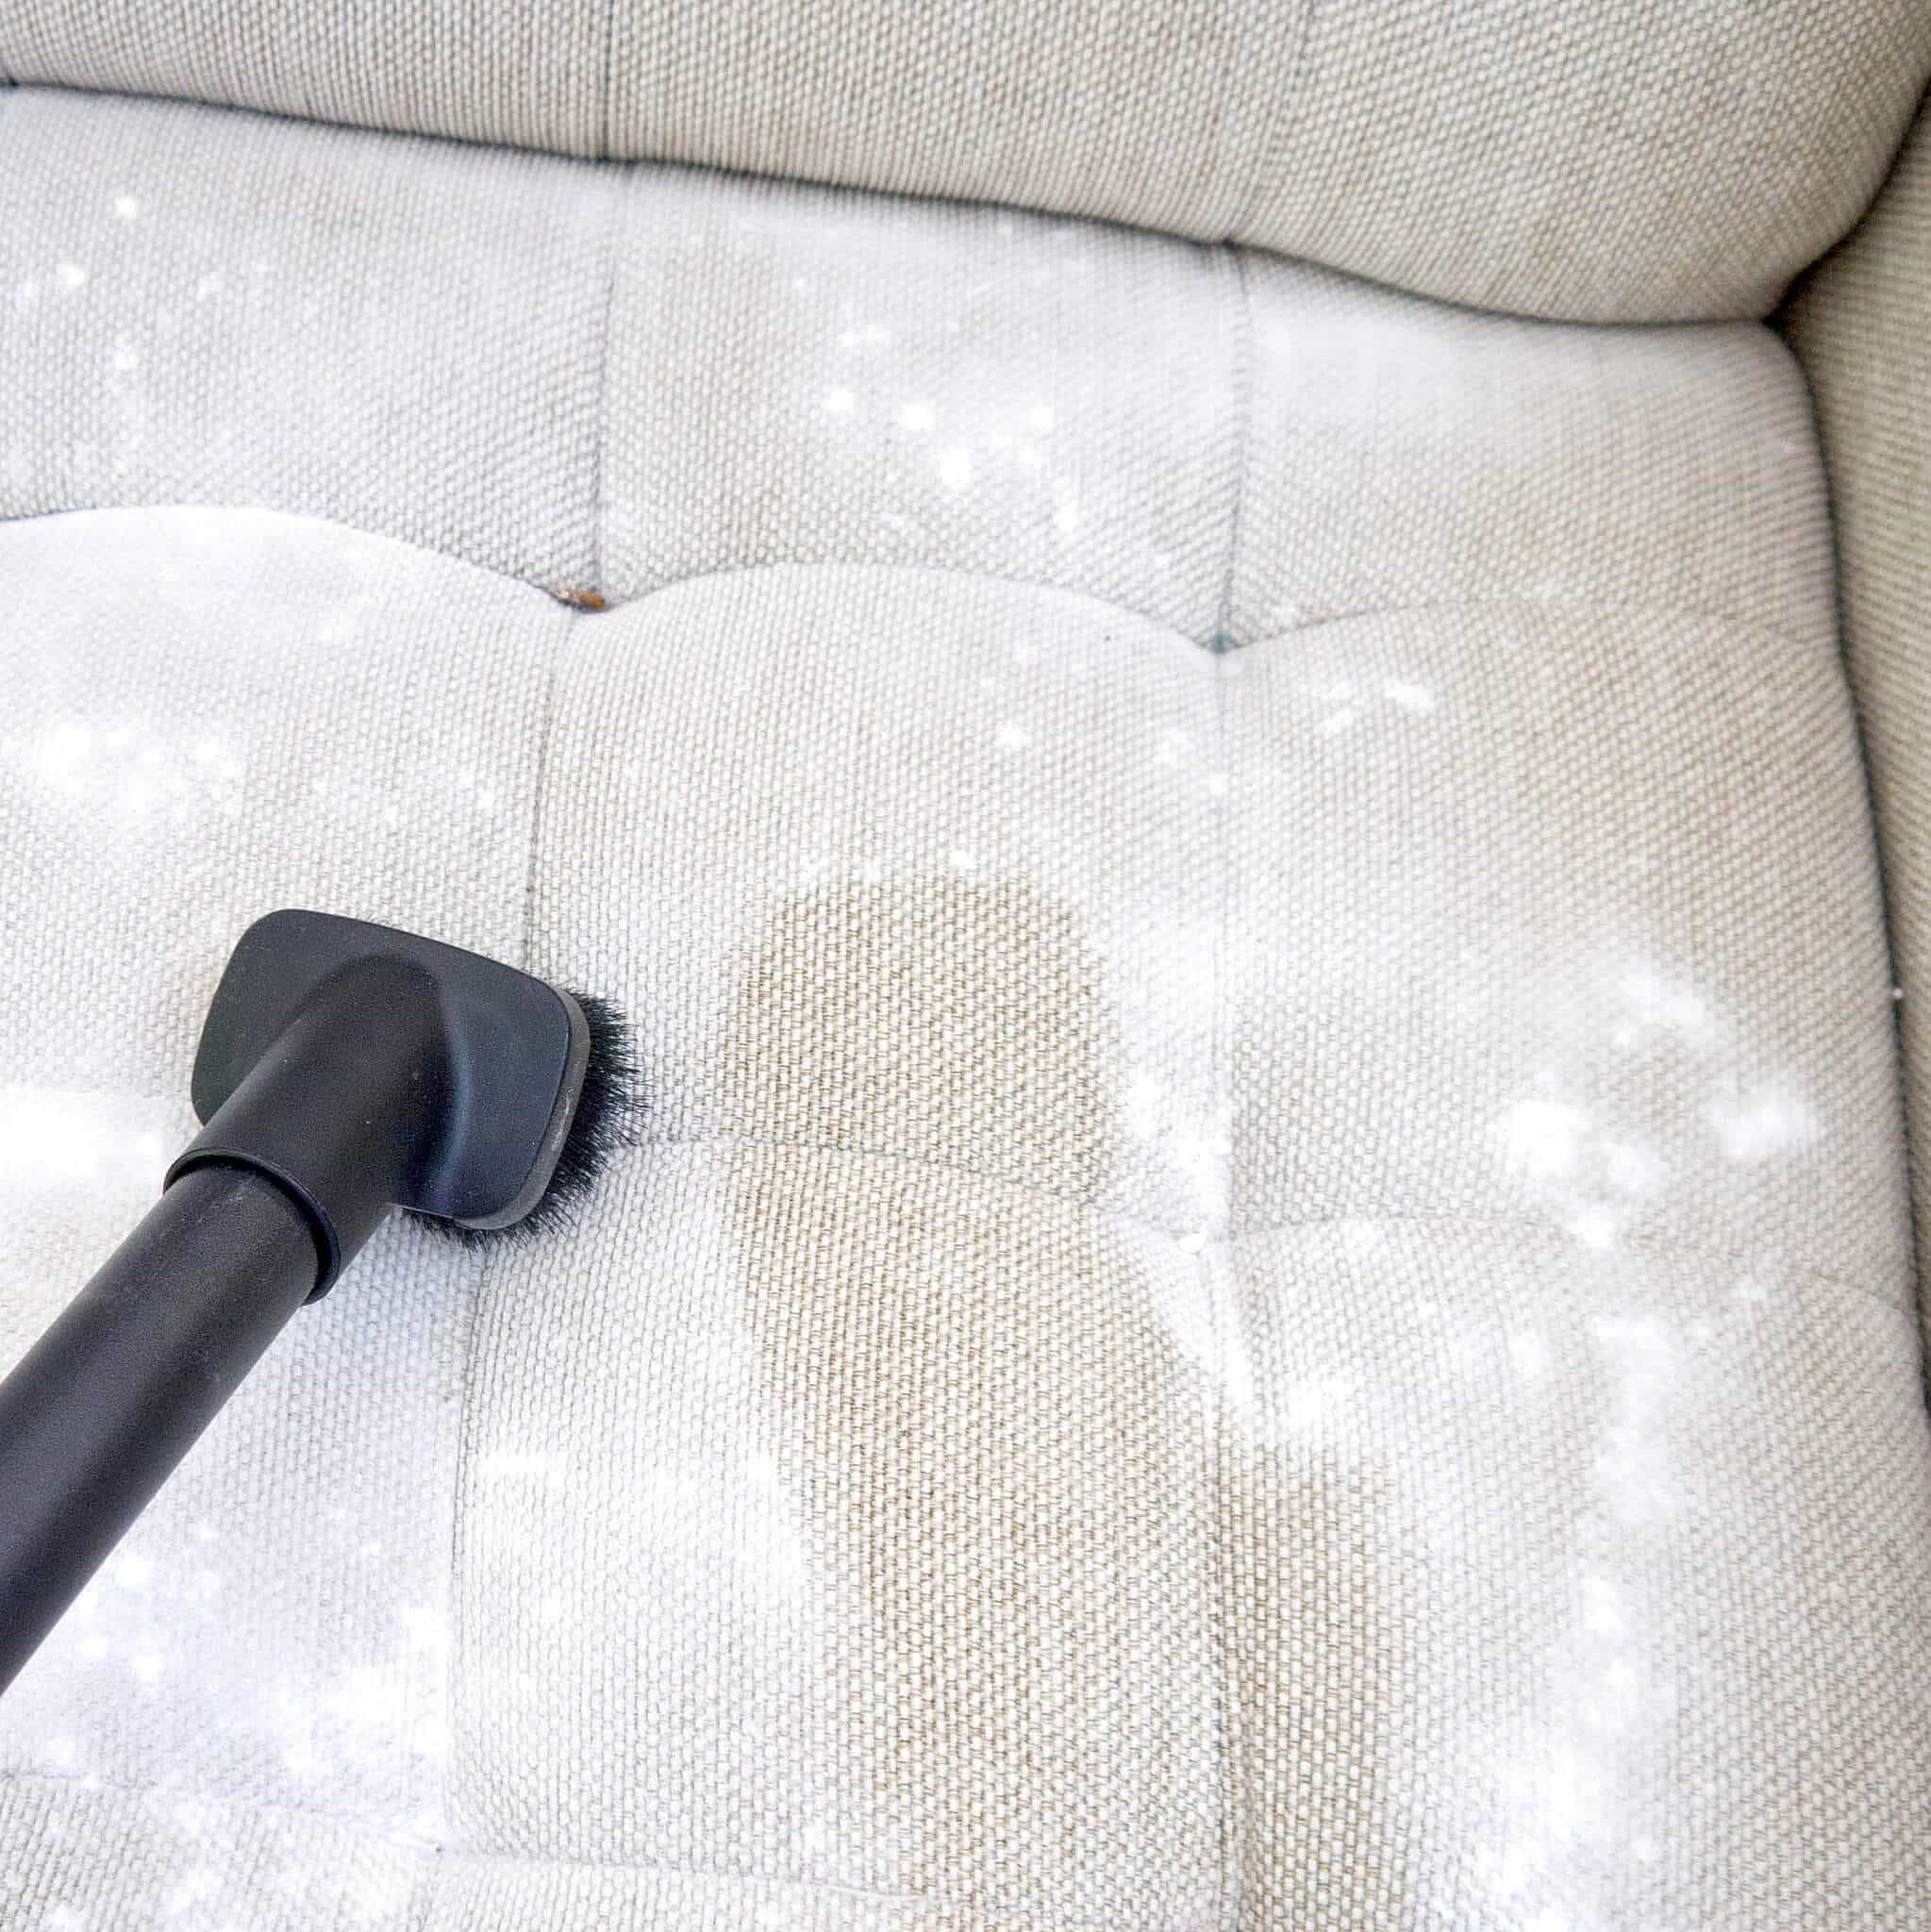 Химчистка дивана в домашних условиях своими руками, полезные советы